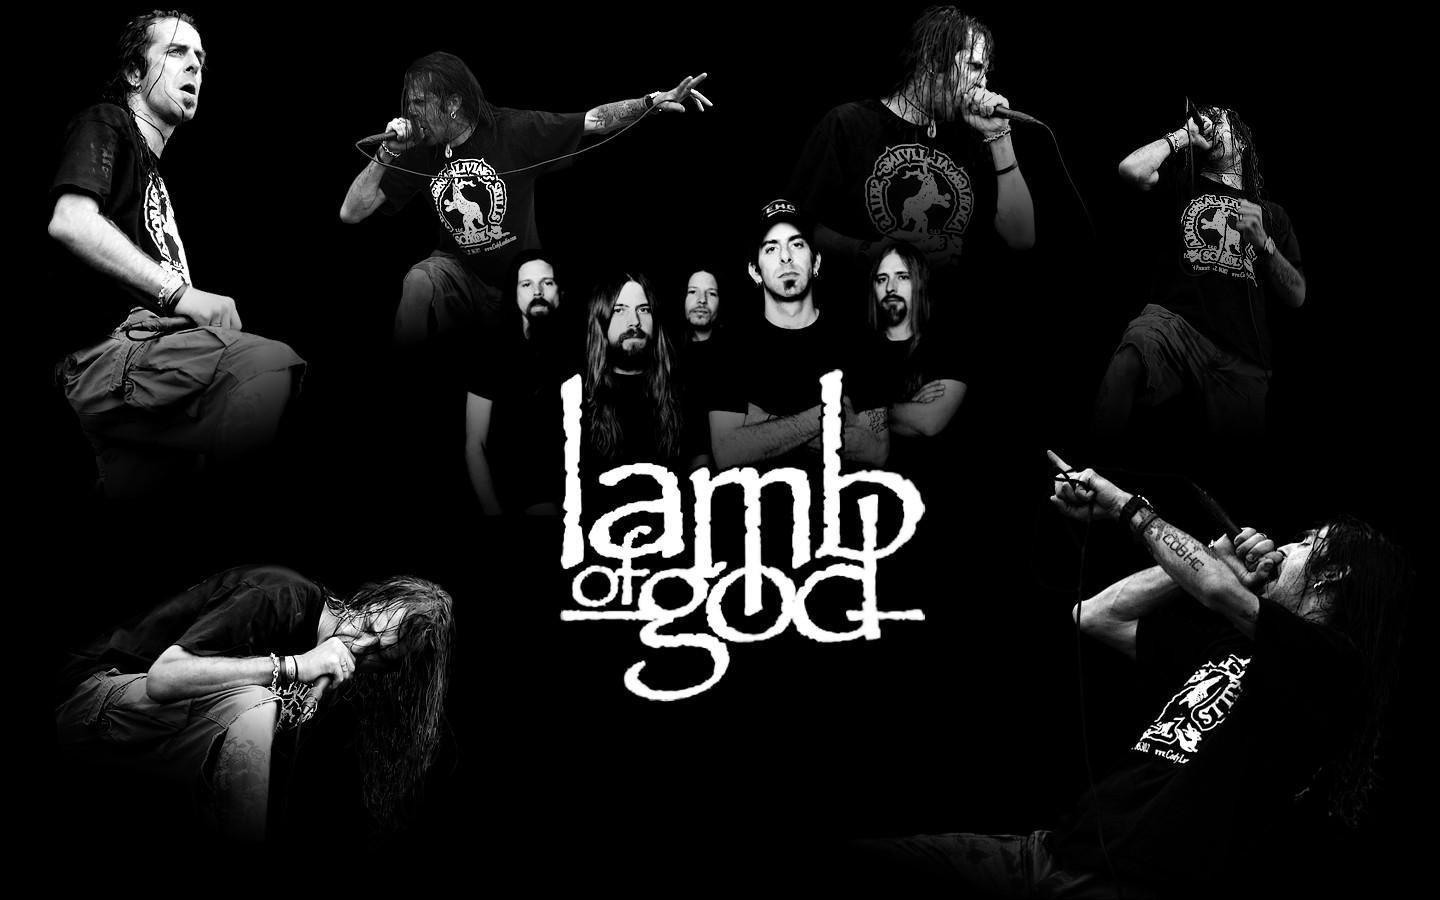 lamb of god images free